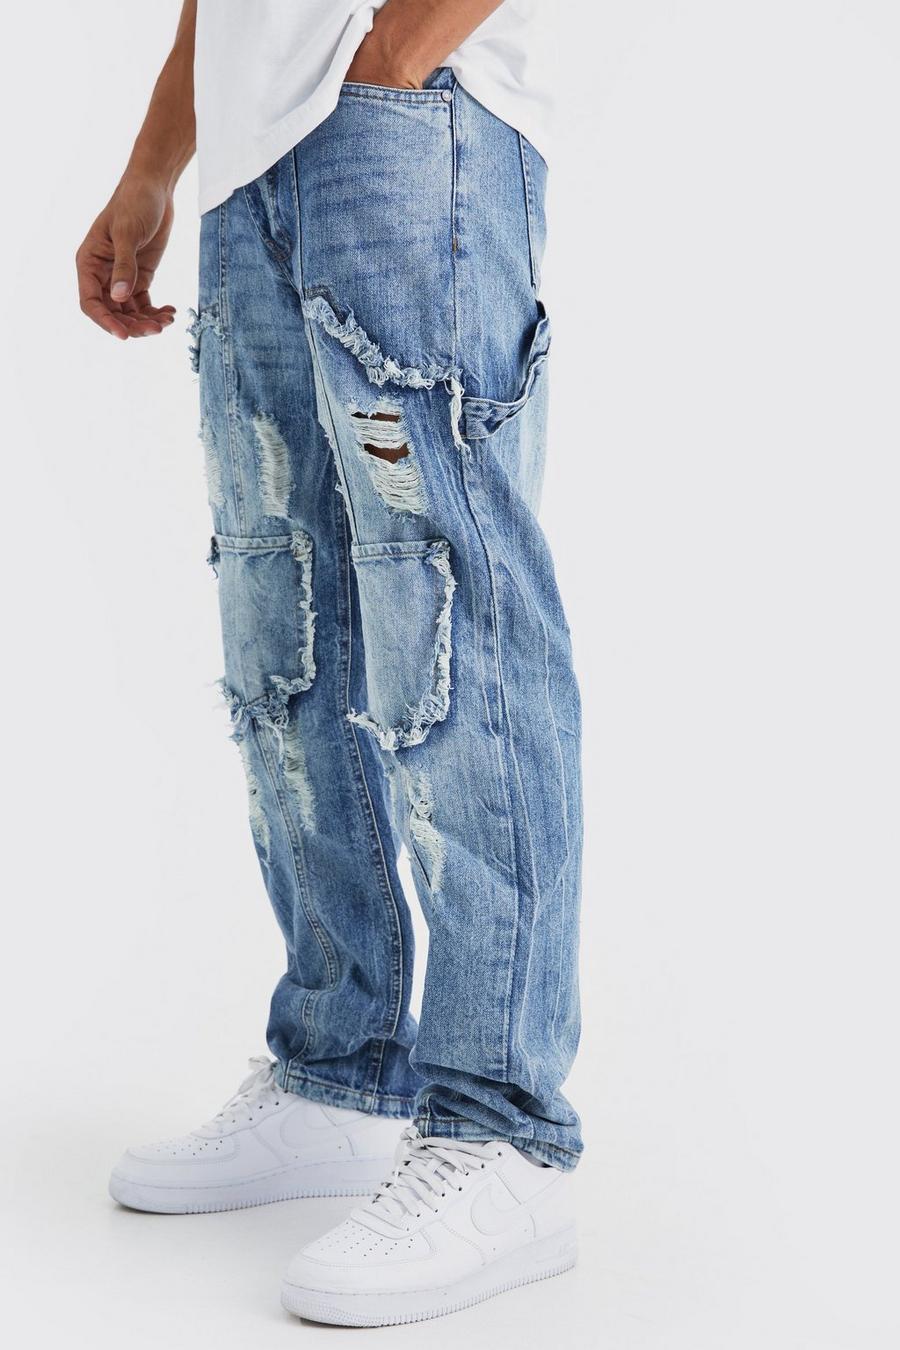 Jeans Cargo rilassati in denim rigido con strappi, Antique blue